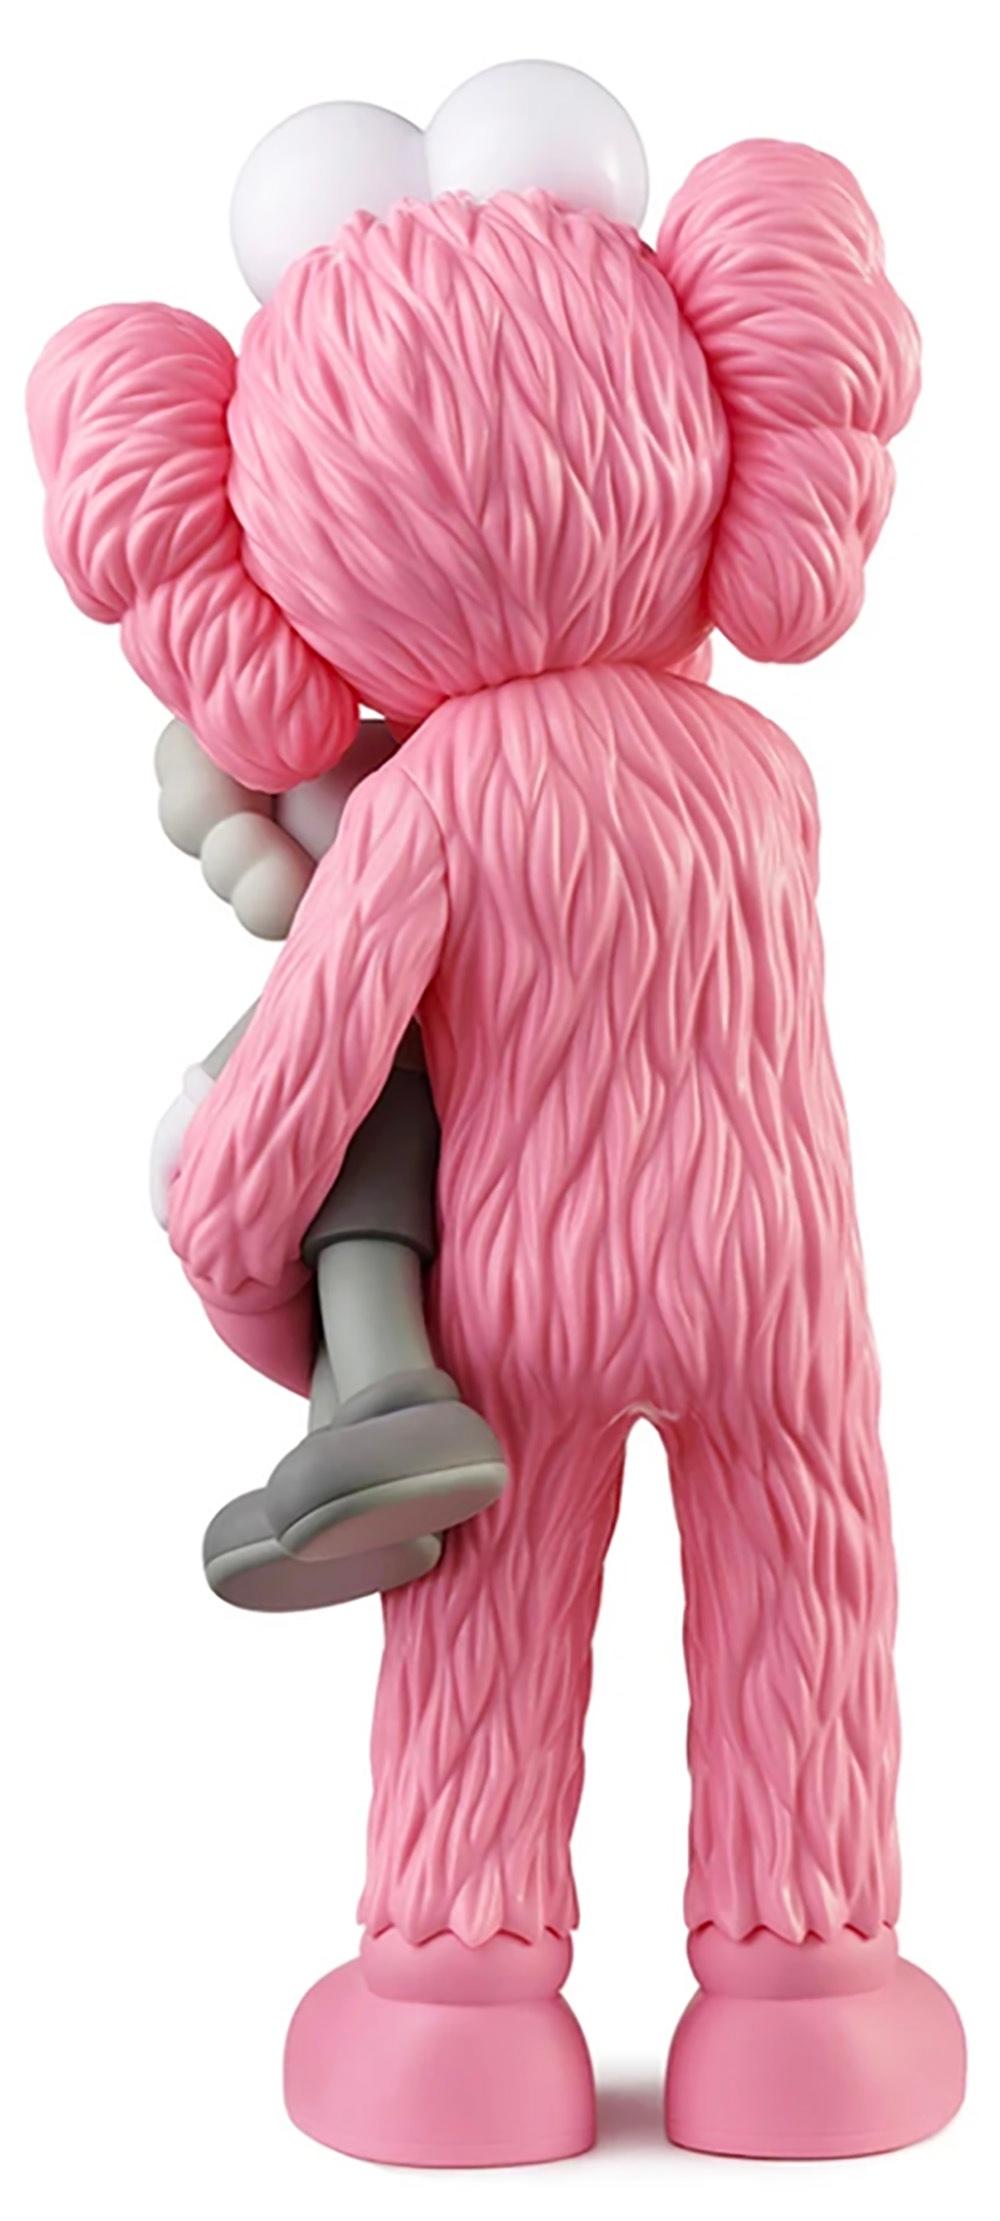 kaws figure pink